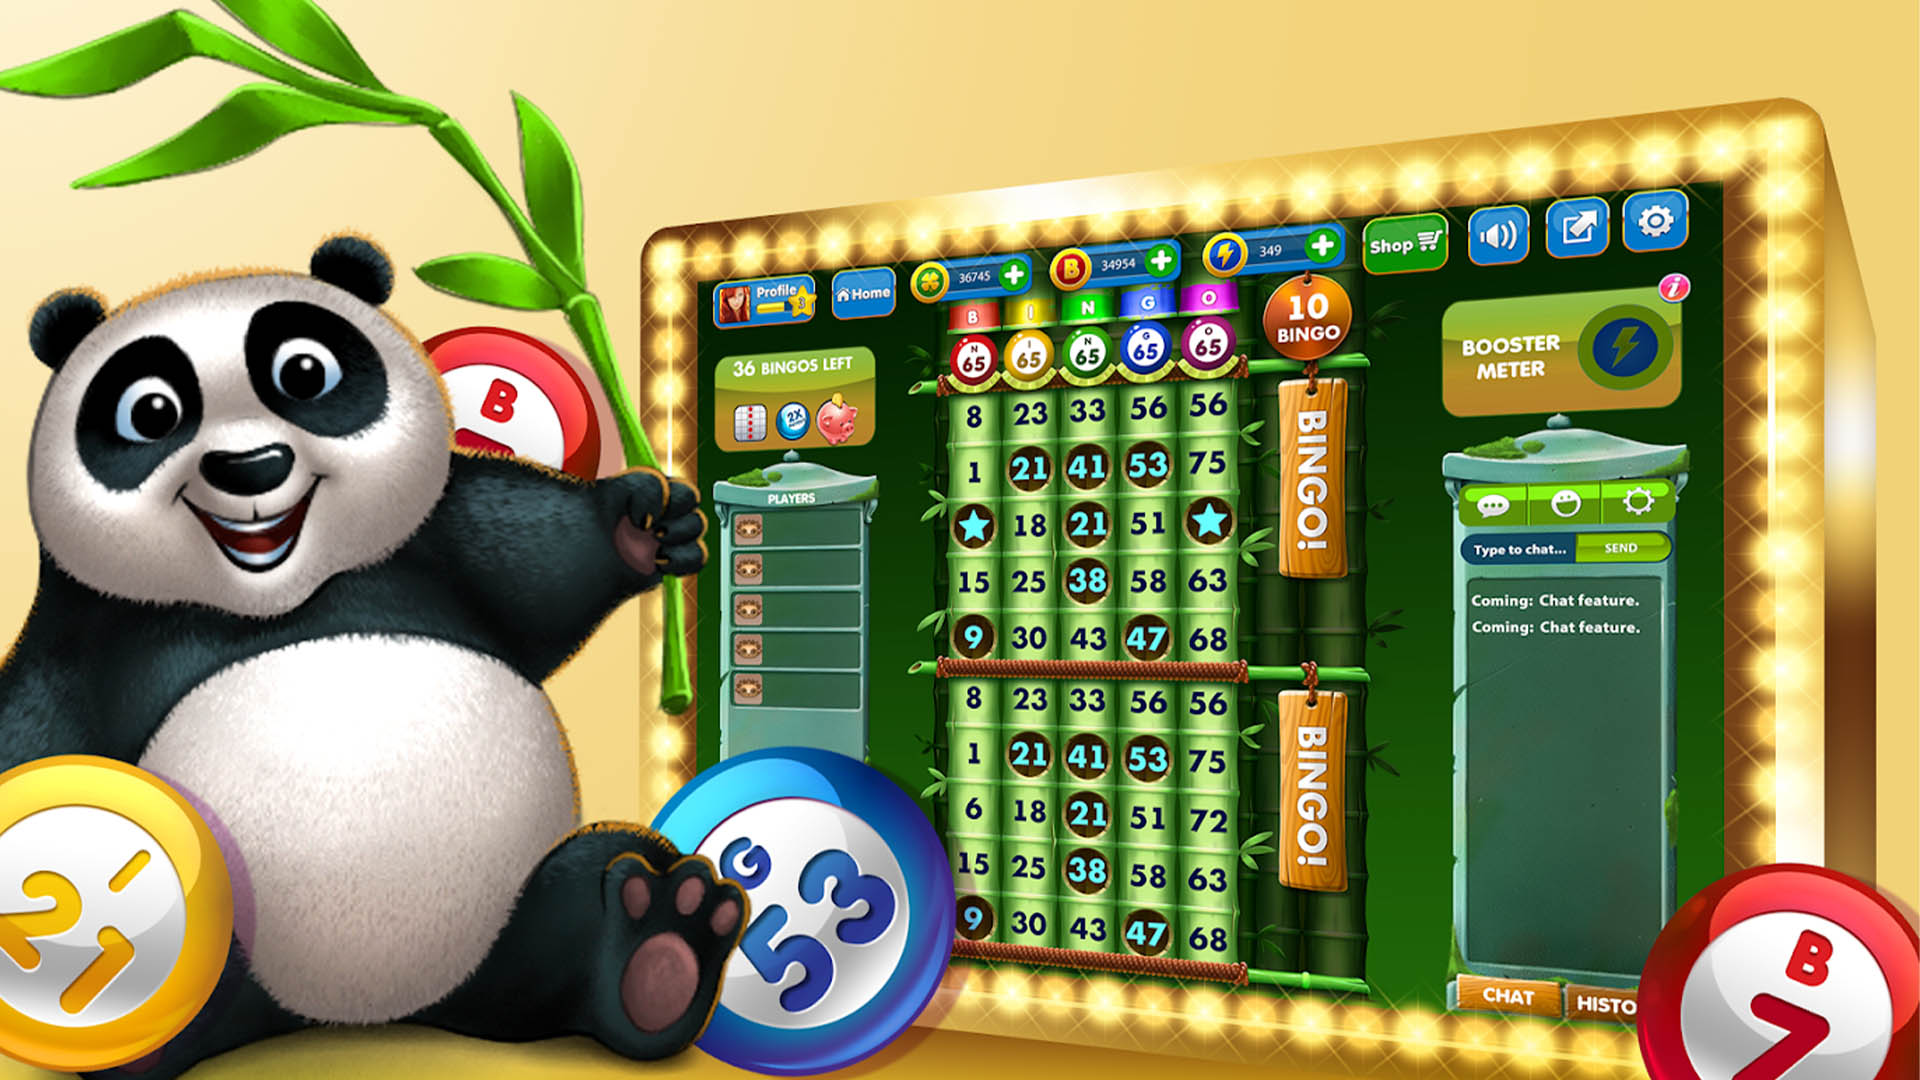 Super Bingo HD best Bingo games for Android